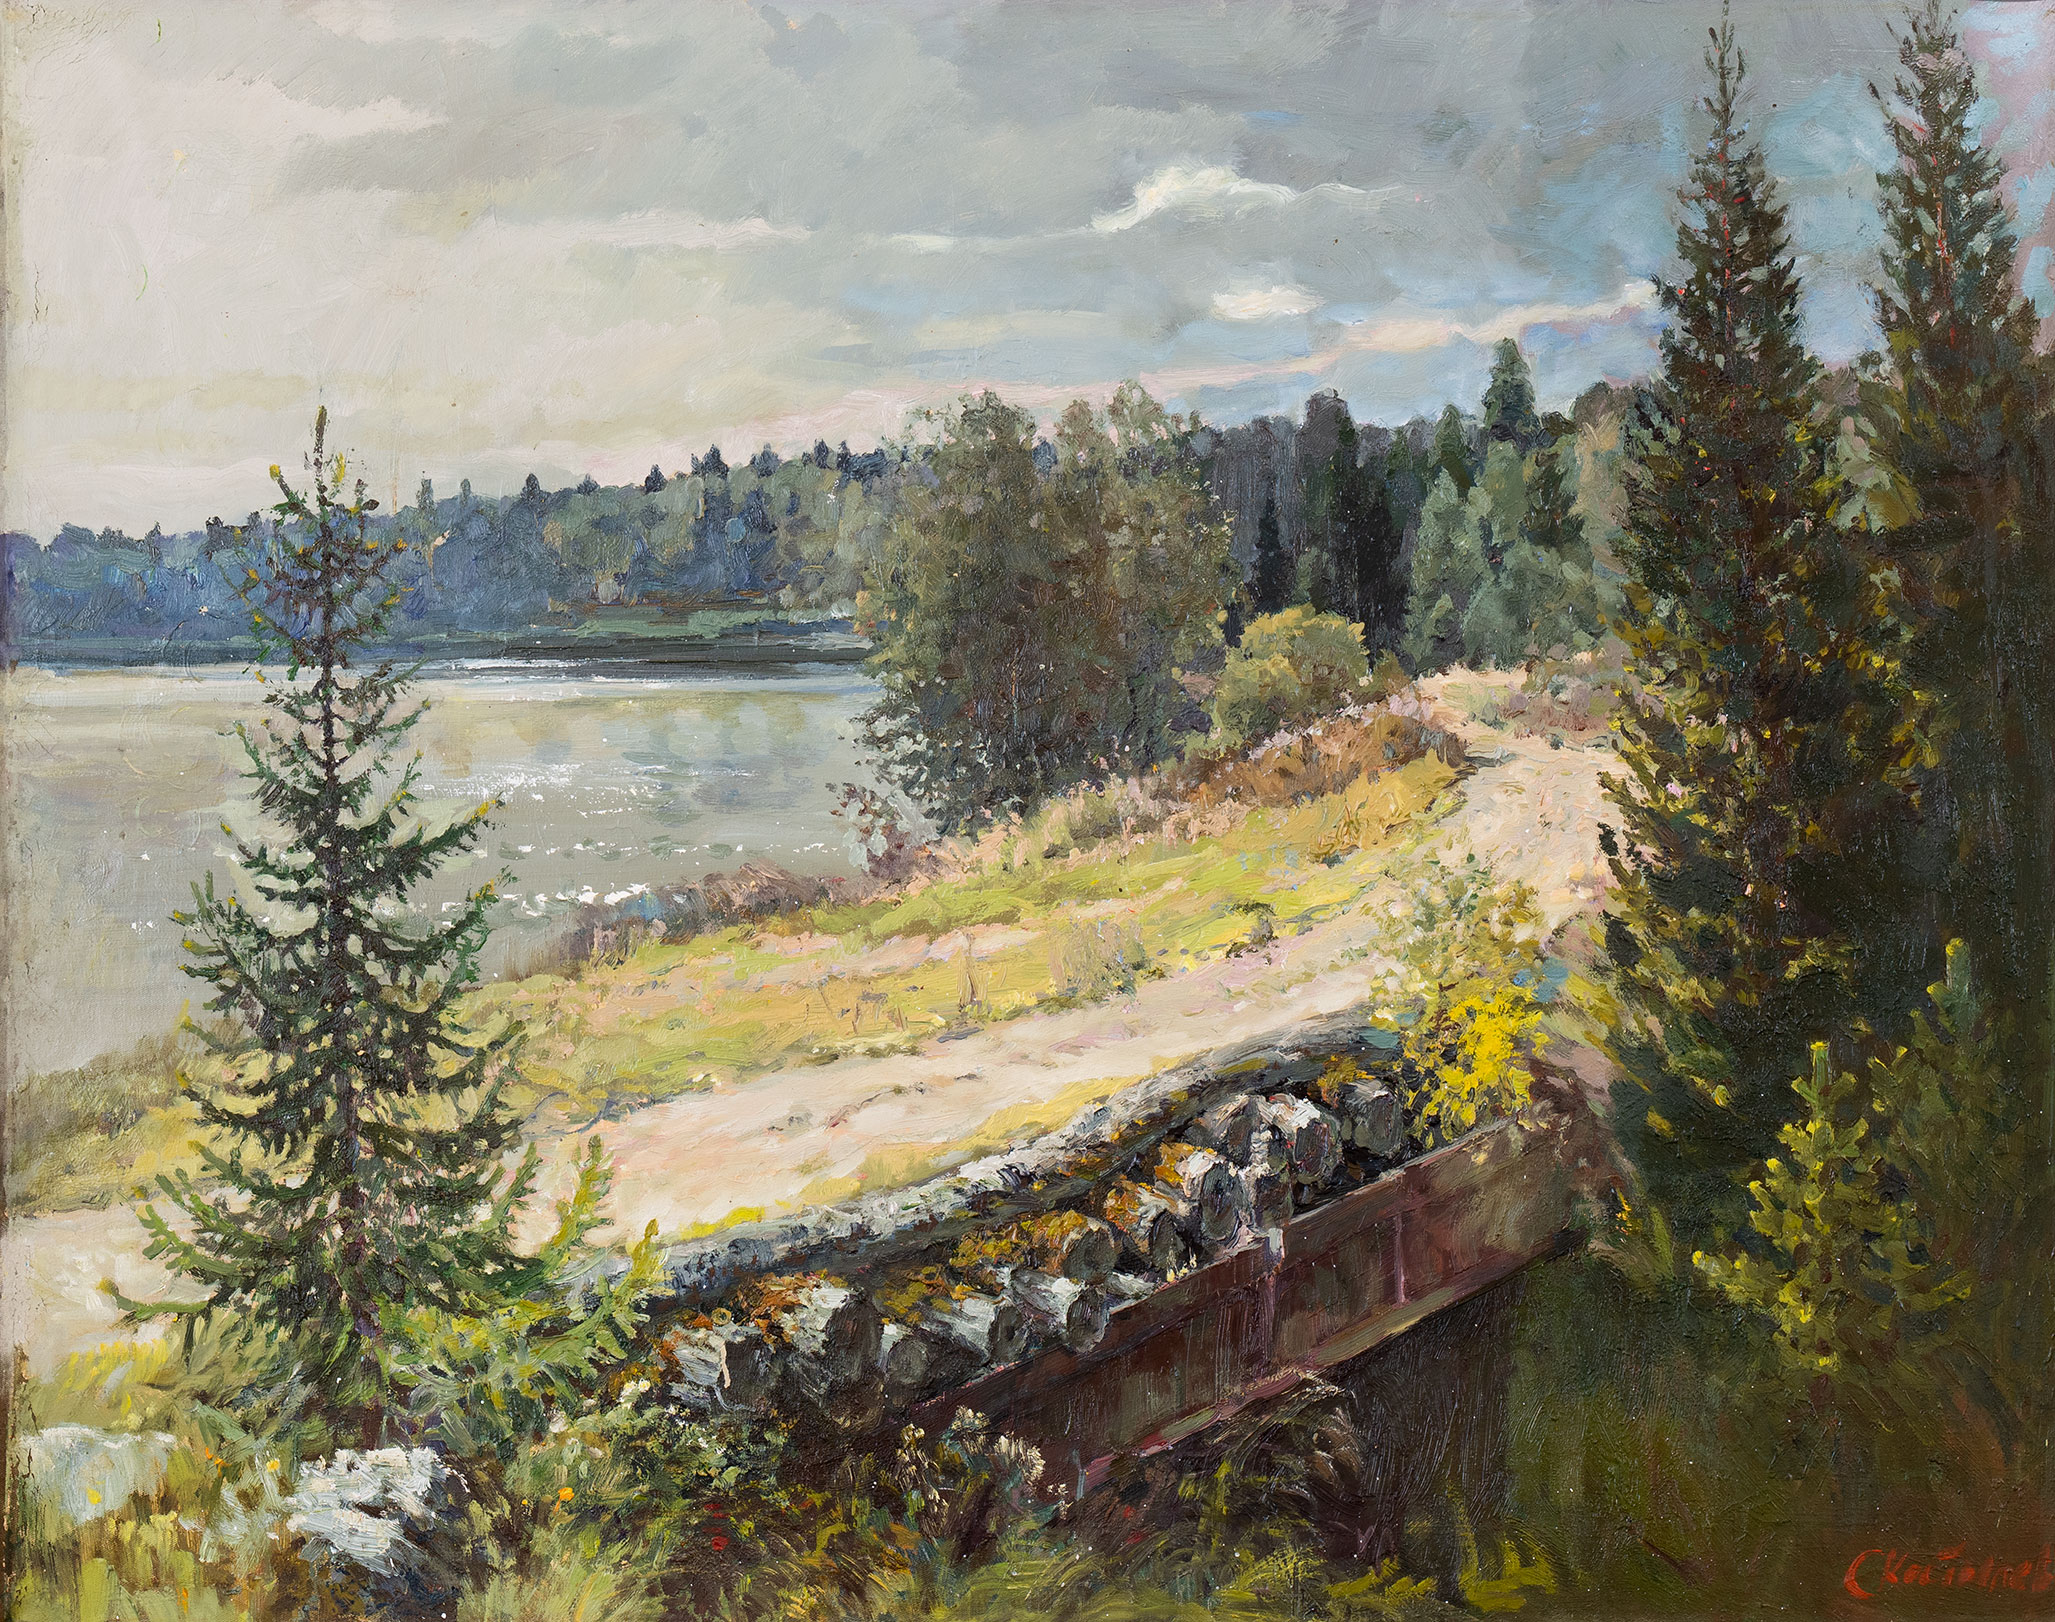 Bridge in Pervomayskoye village - 1, Sergey Kostylev, Buy the painting Oil